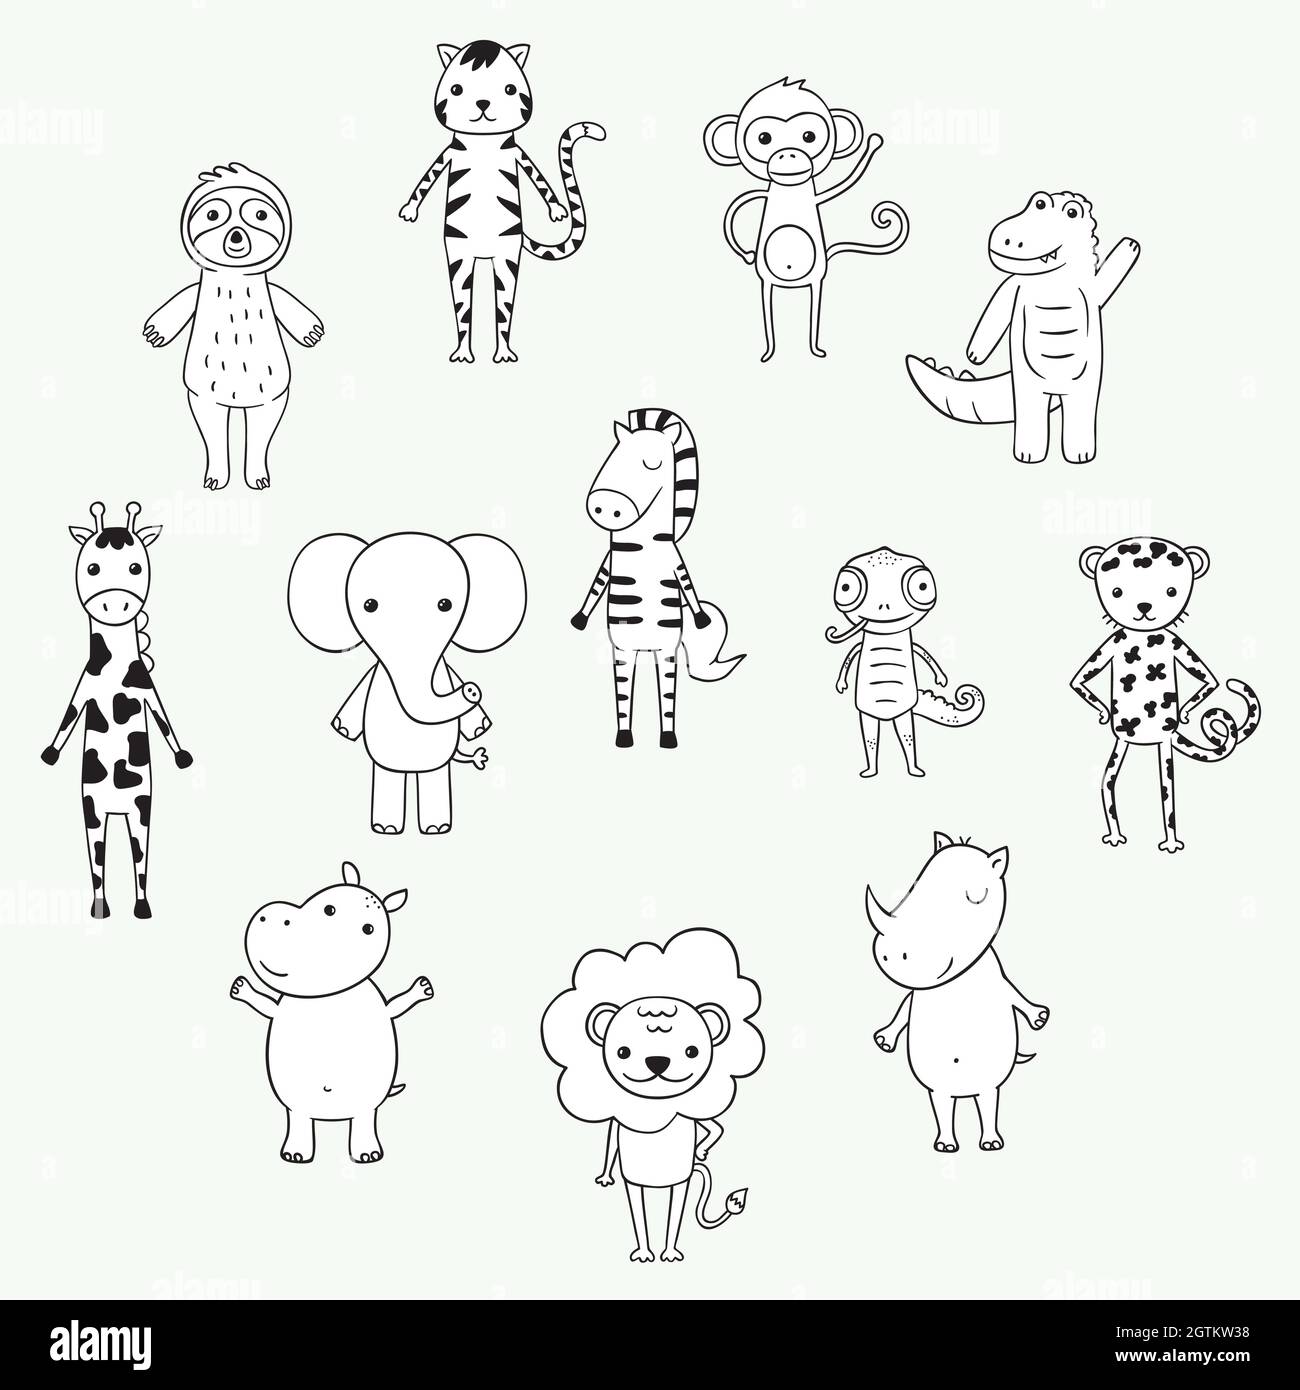 Animaux de la jungle et safari mignons. Personnages du zoo de dessins animés dessinés à la main. Éléphant, lion, cloth, singe, zèbre, girafe. Noir et blanc. Illustration de Vecteur